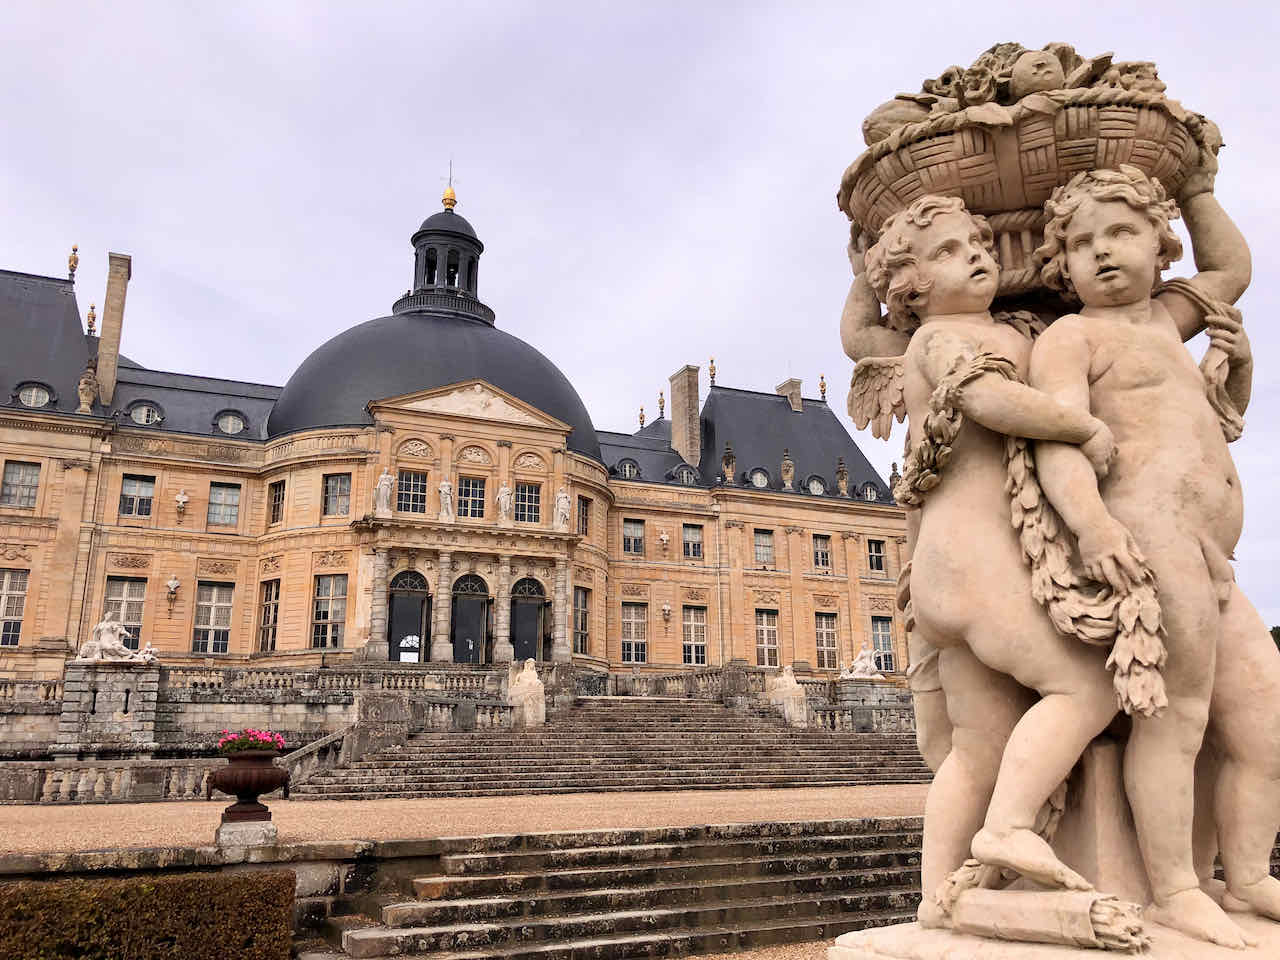 Vaux-le-Vicomte statues France